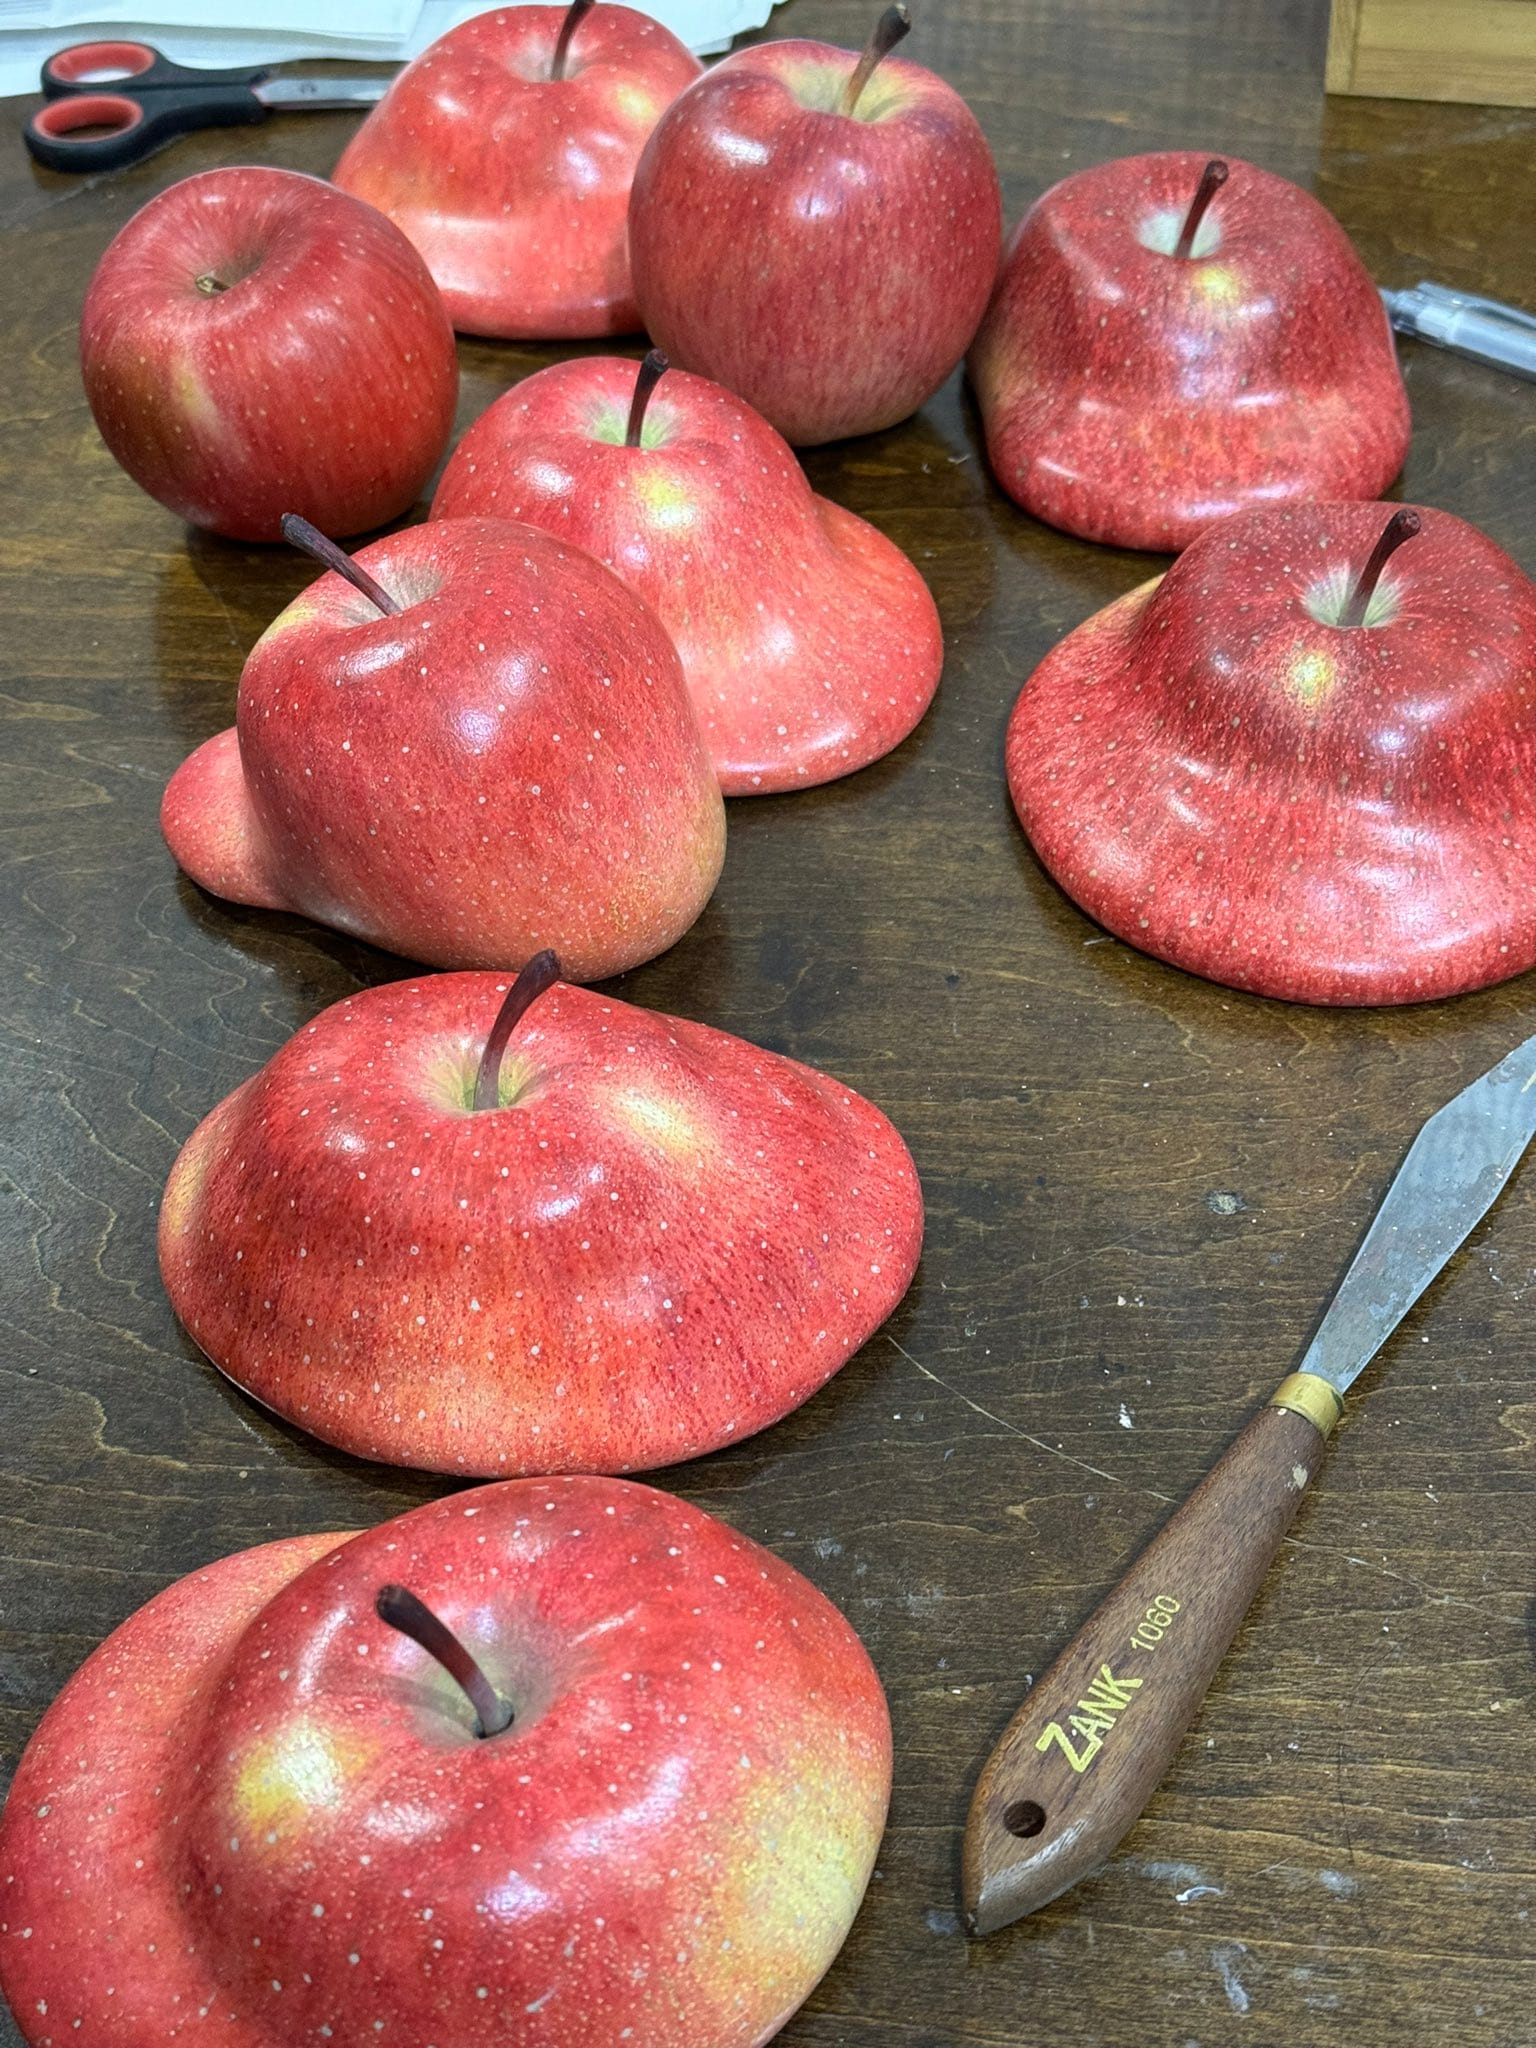 다들 사과가 녹기도 한다는 사실 알고 계셨어요?